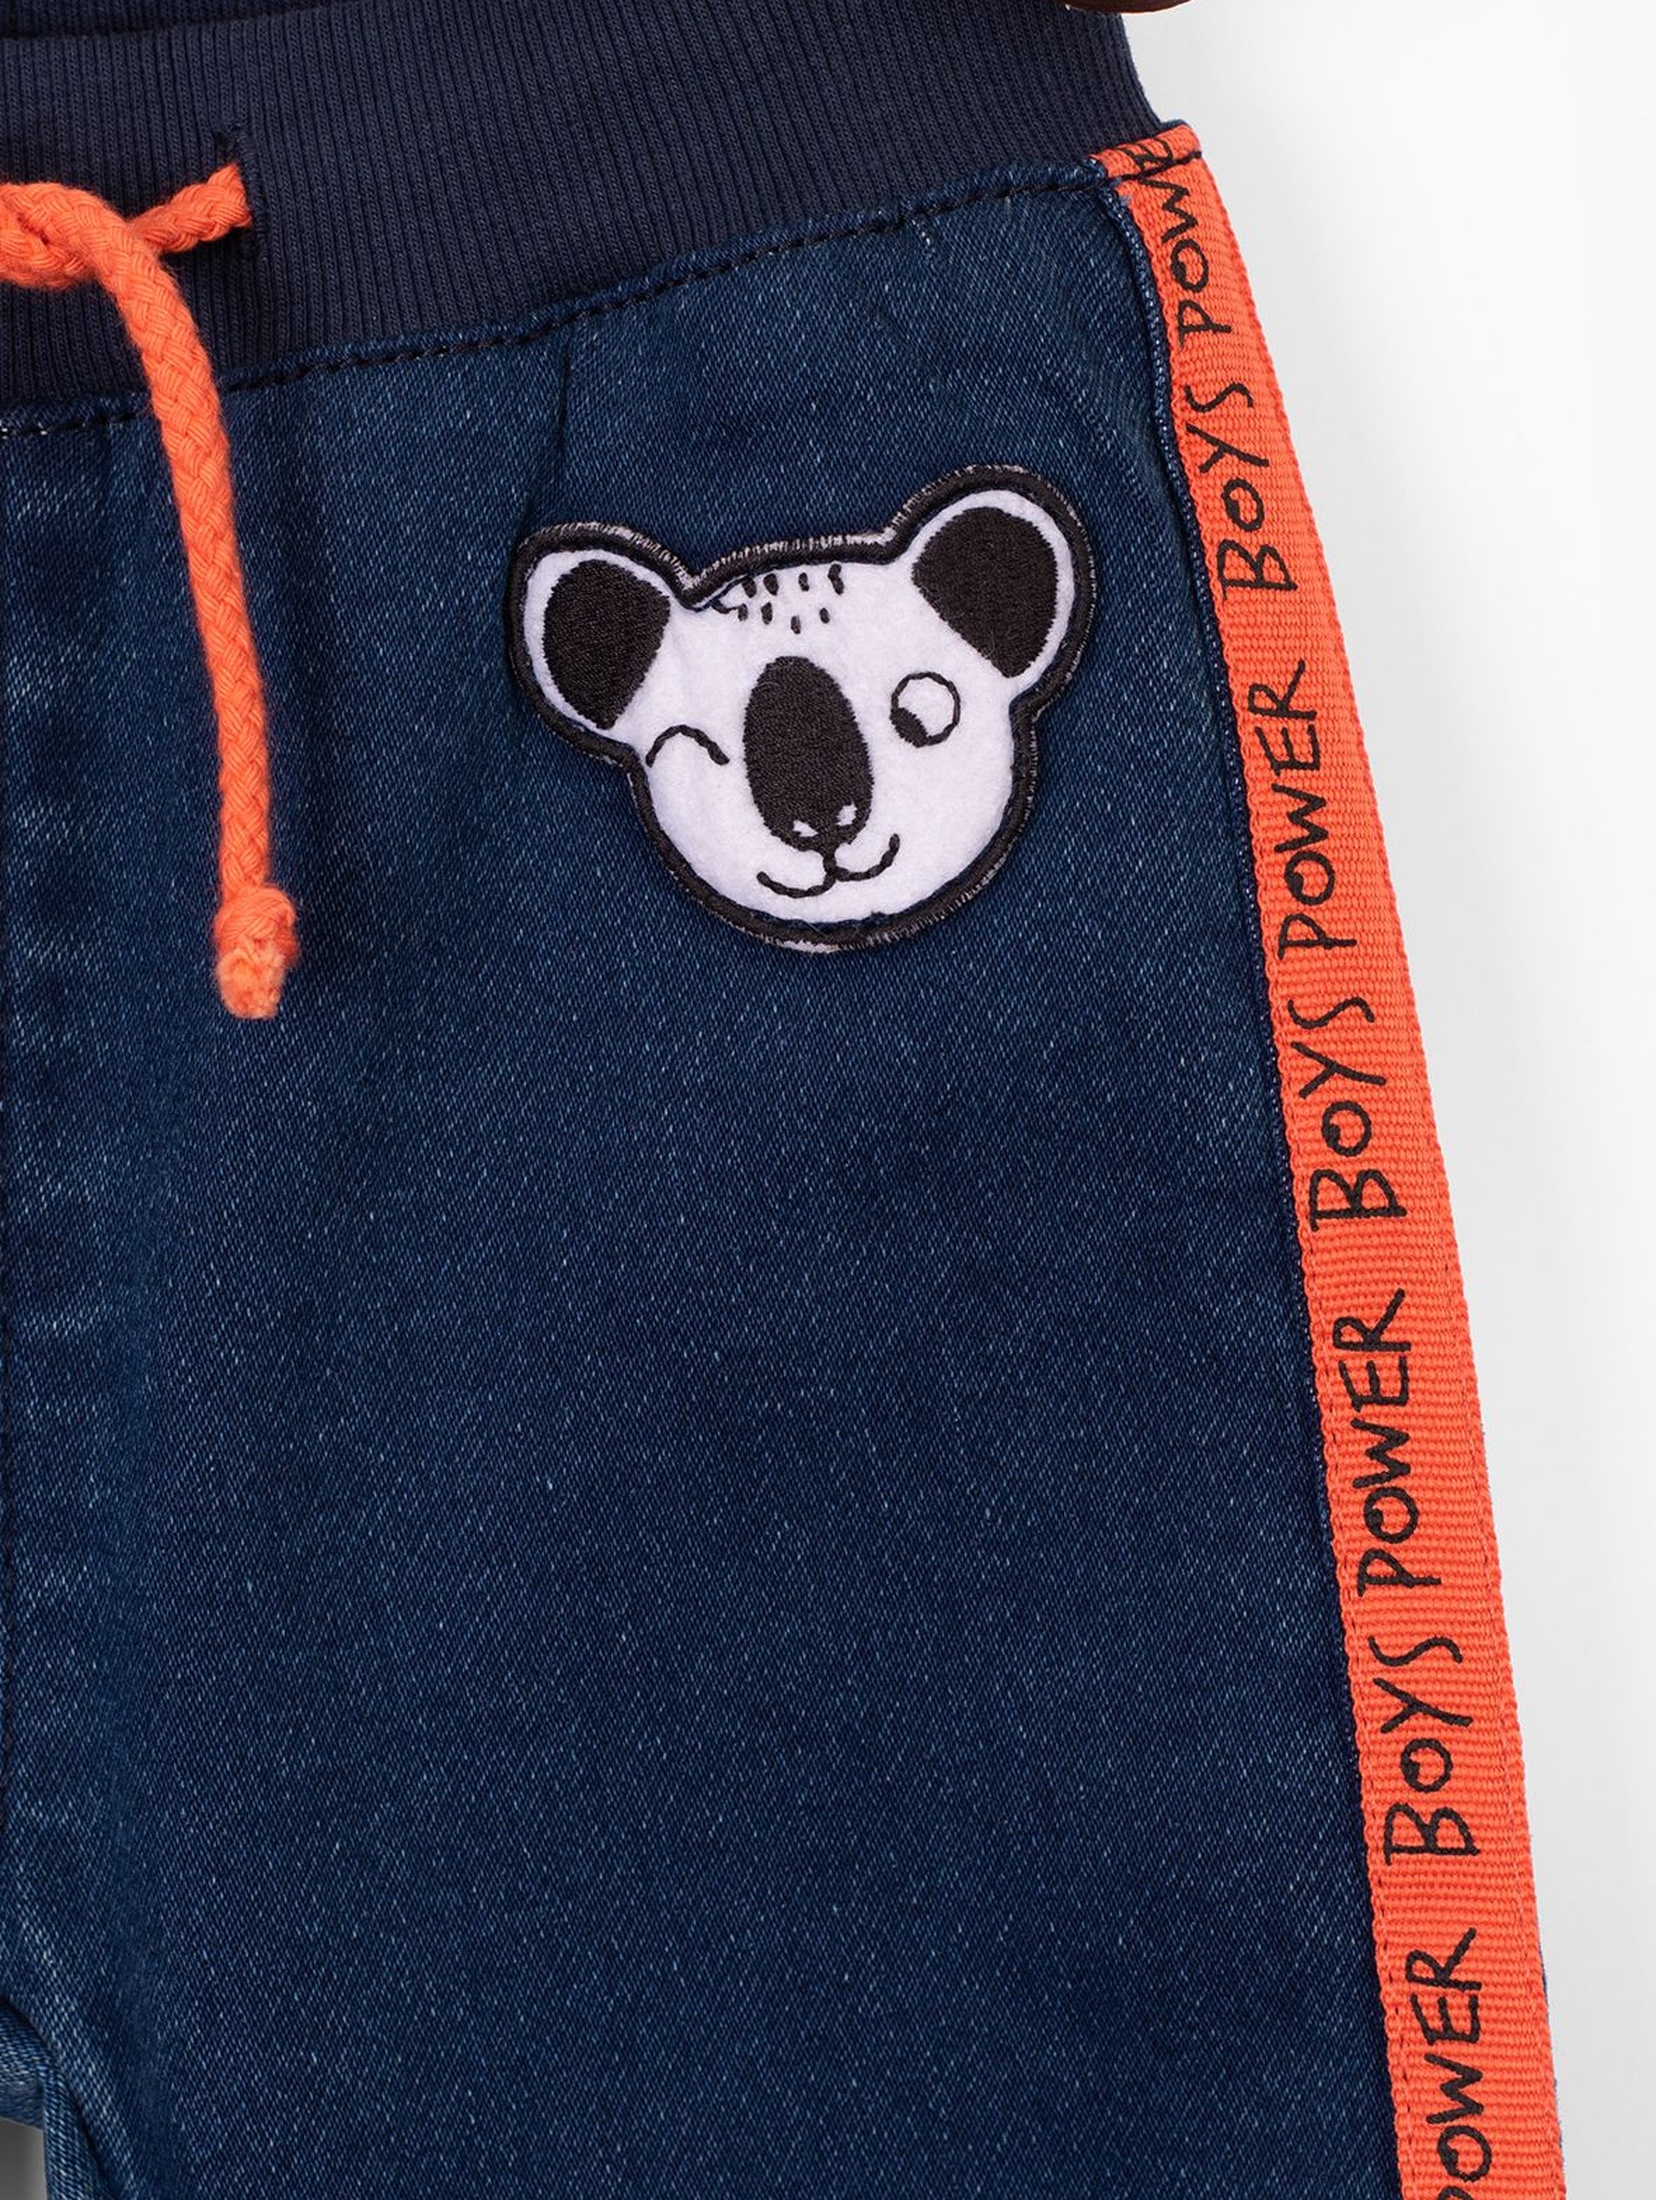 Spodnie chłopięce jeansowe z pandą